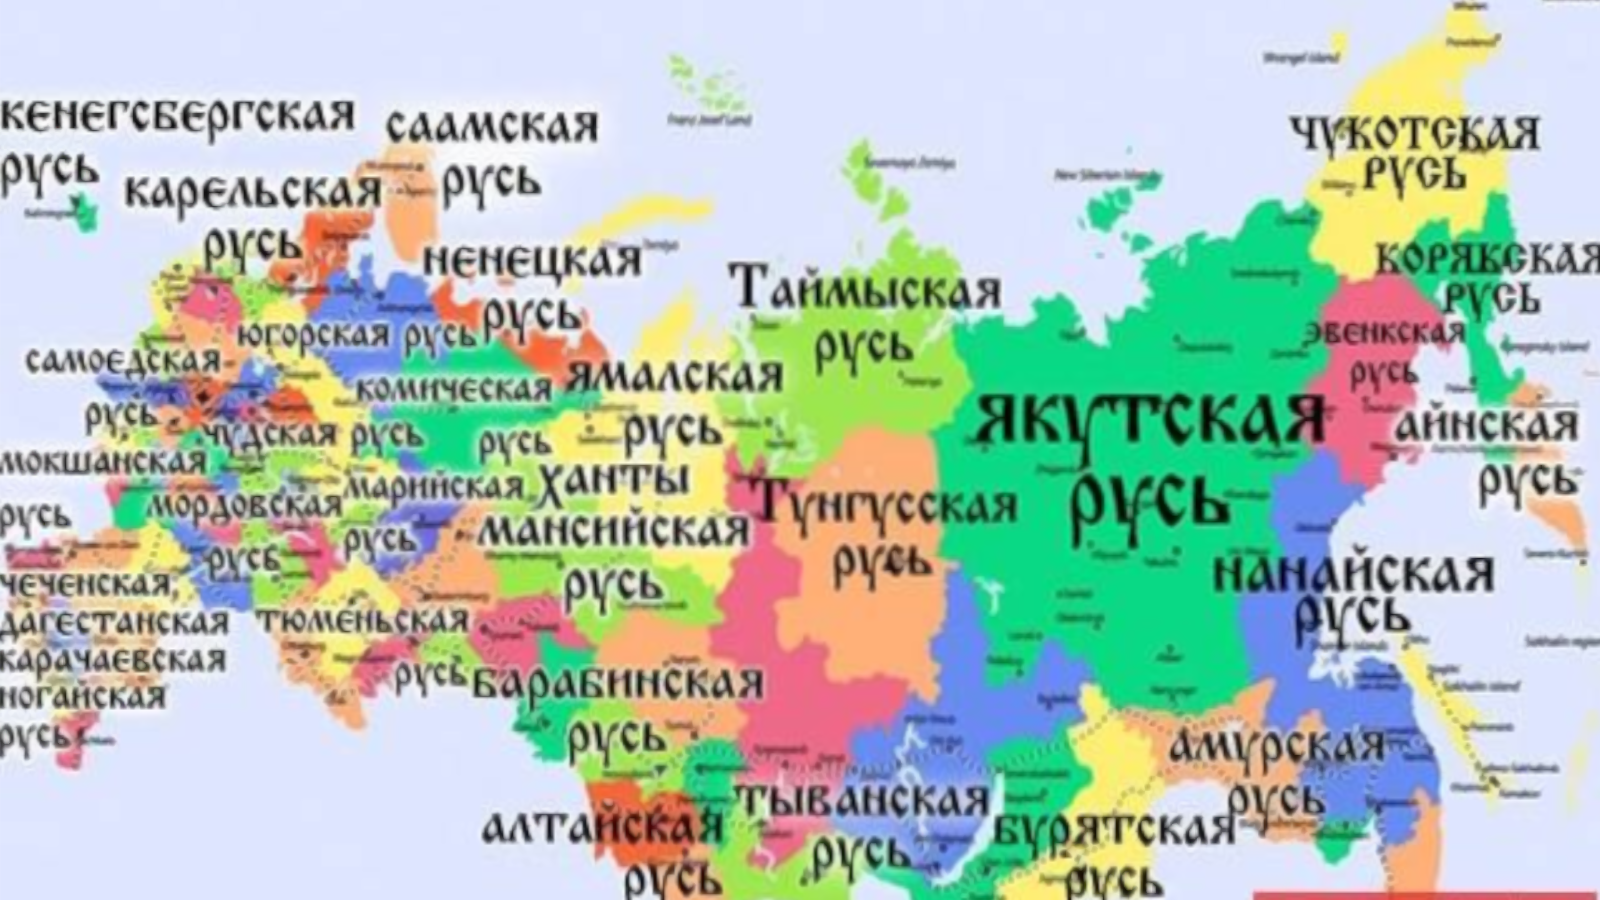 Кадыров поручил изъять из школ новые учебники истории